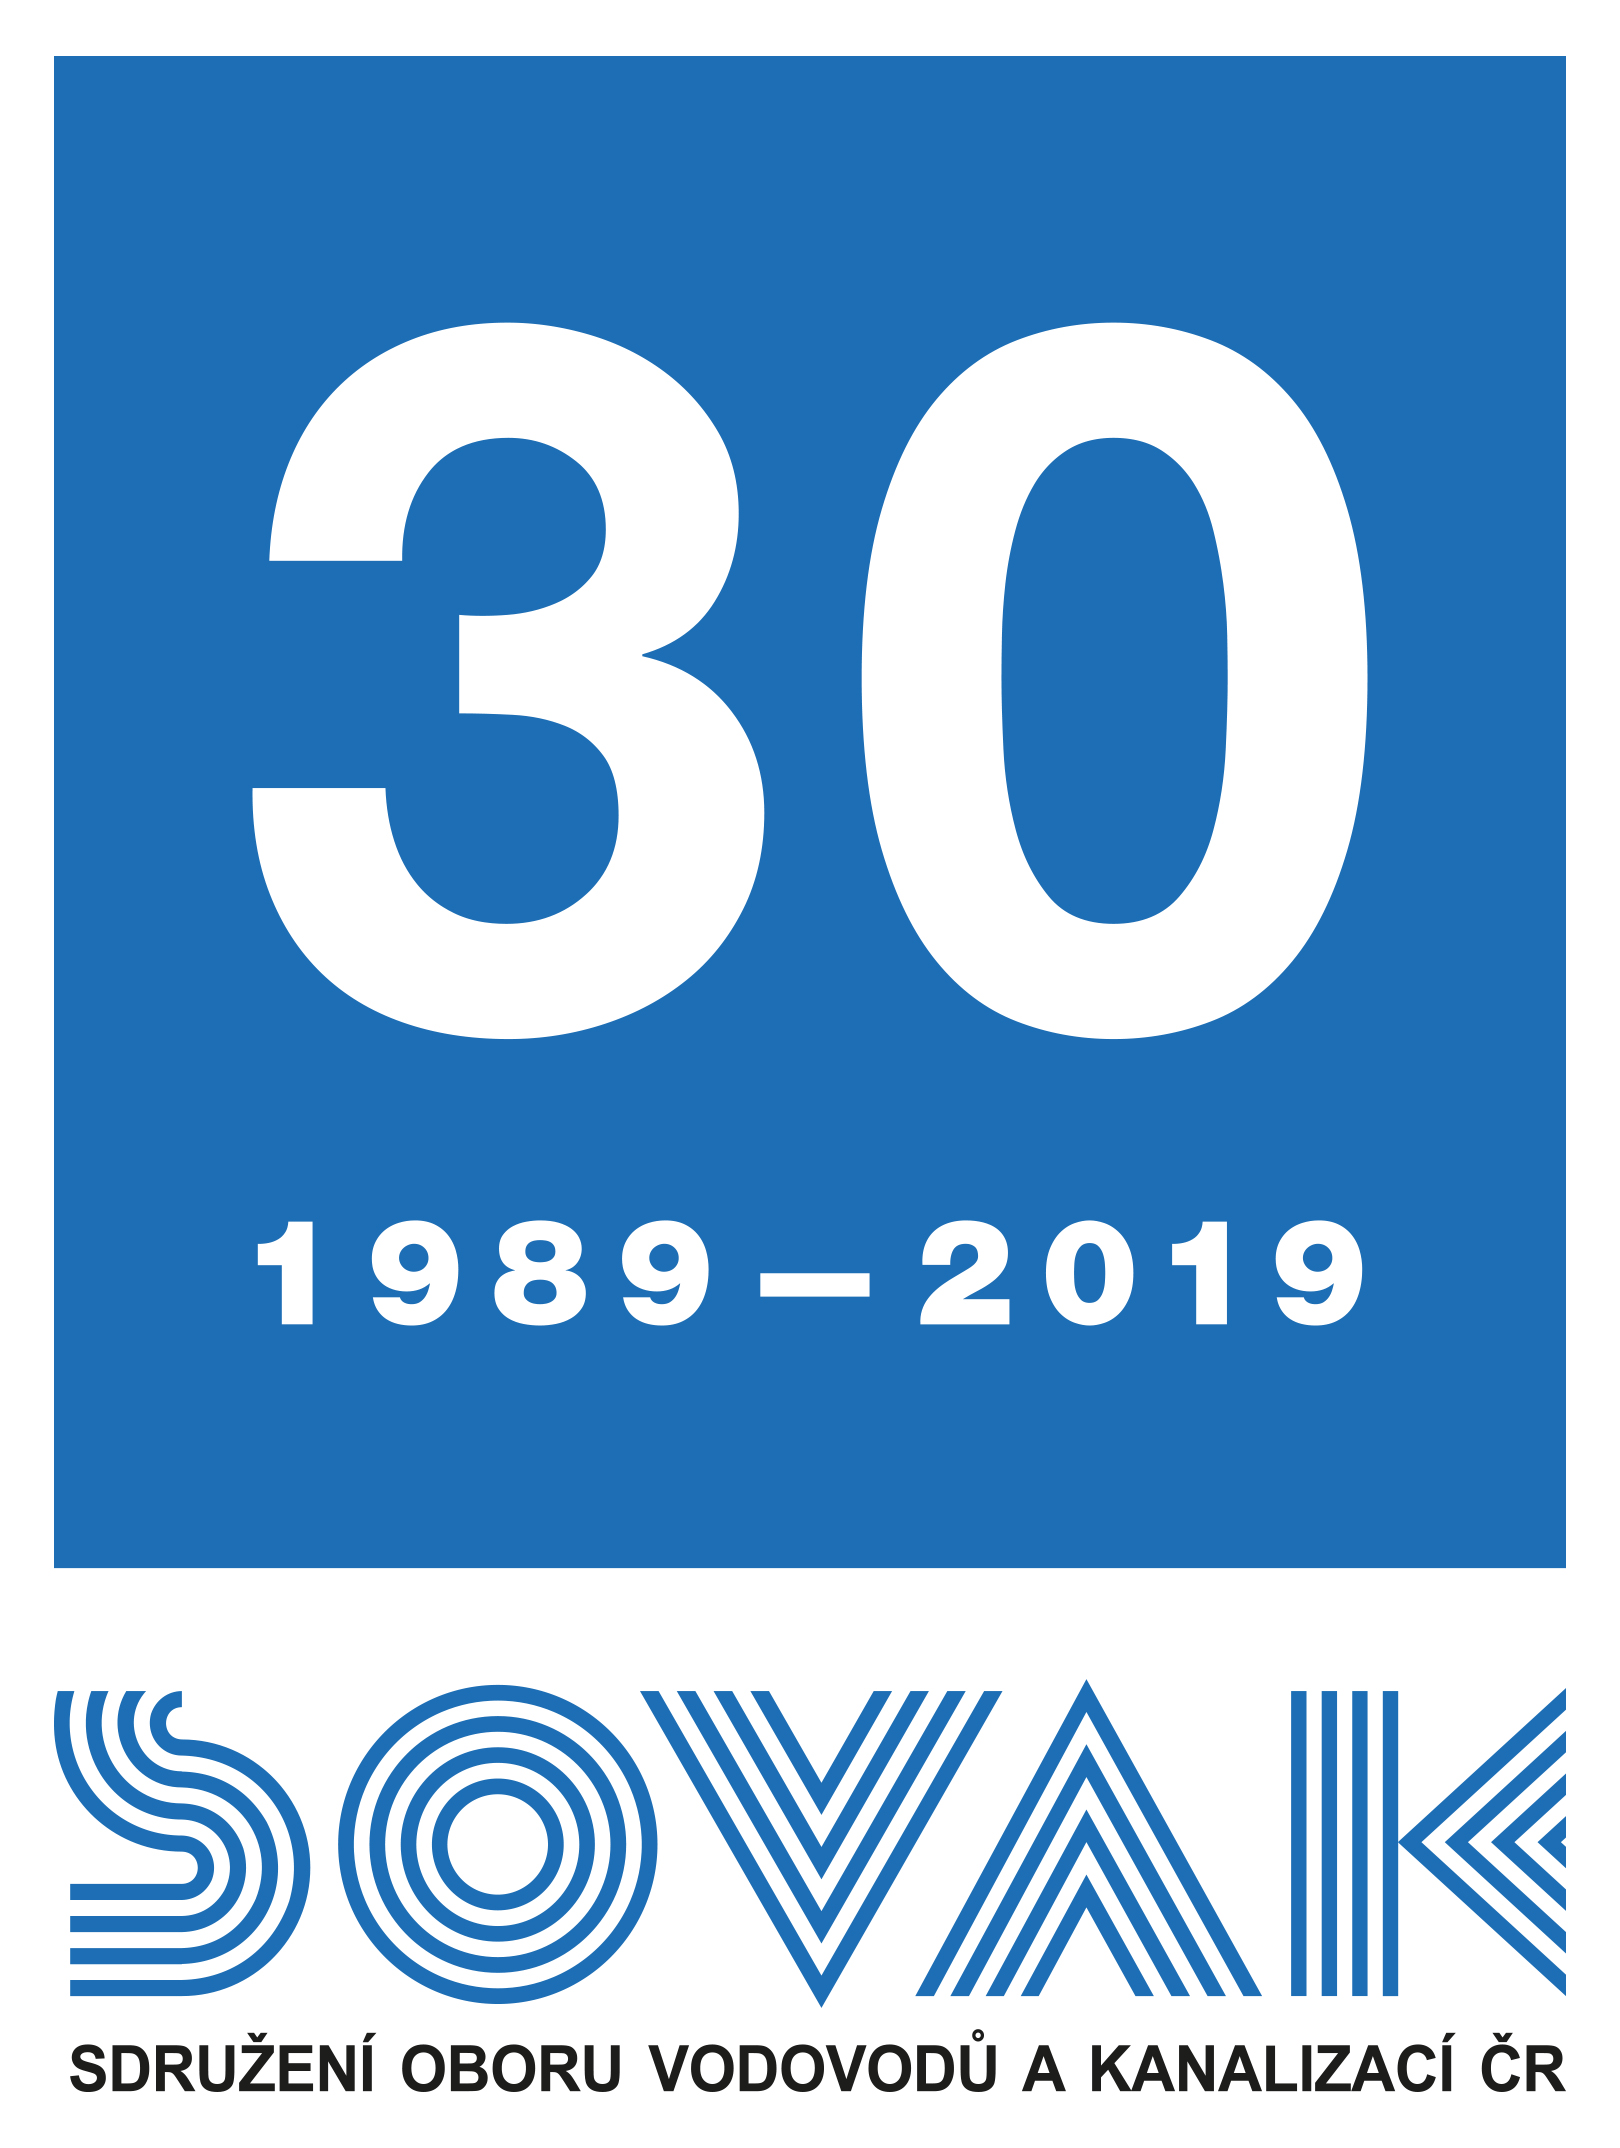 Logo 30 let SOVAK ČR